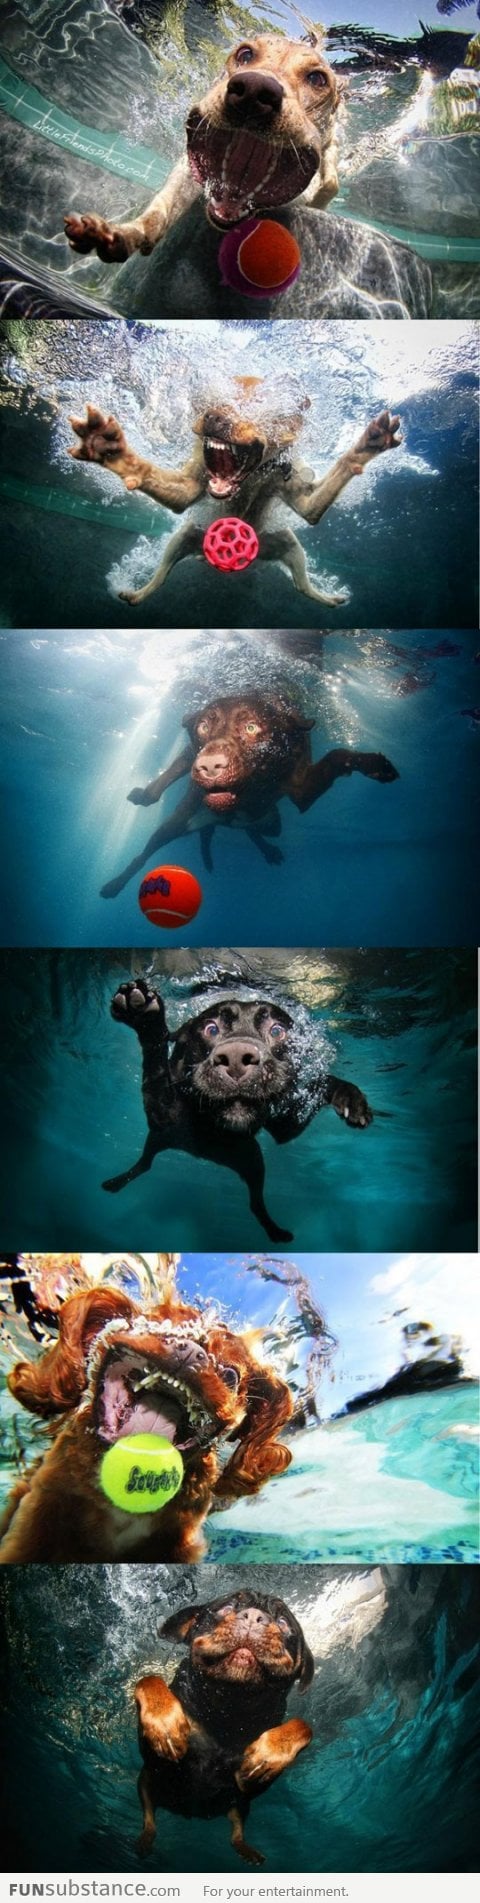 Underwater ball catching